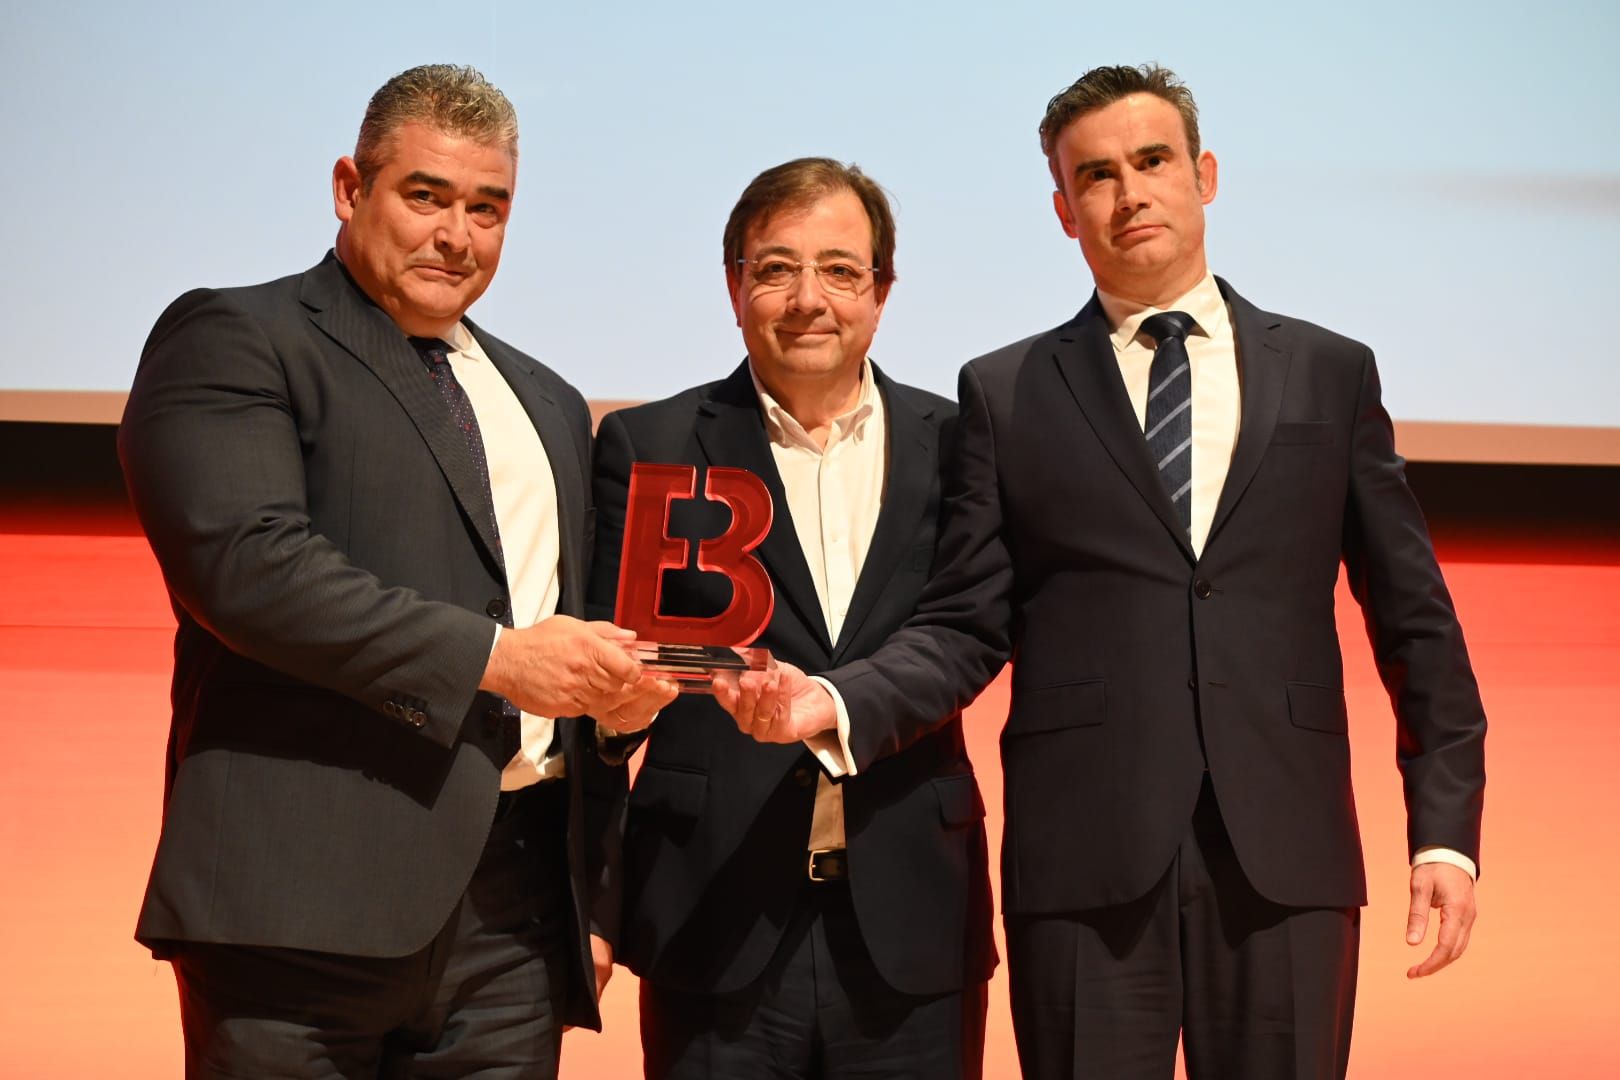 Las imágenes de la gala XII Premios Empresario de Badajoz